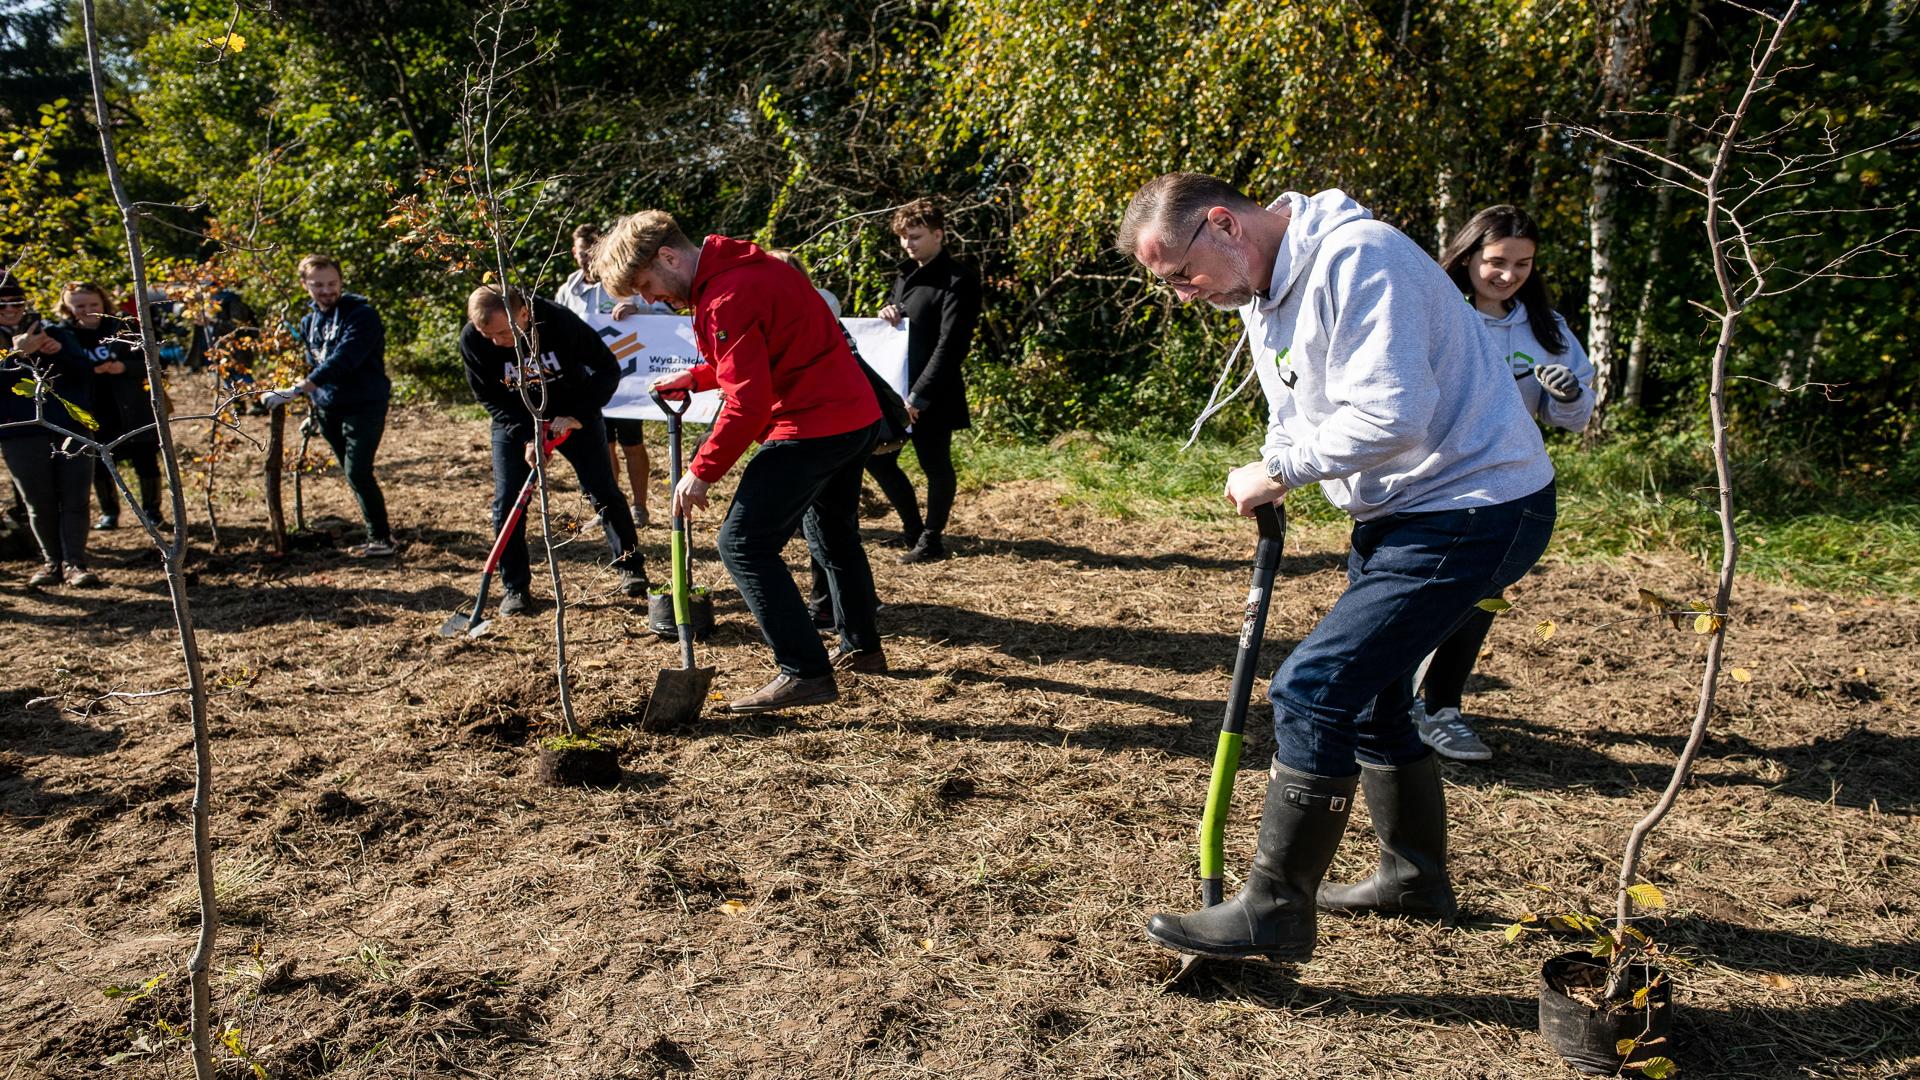 Dziekan wydziału prof. Marek Cała w szarej bluzie wydziałowej, wraaz z przedstawicielem miasta Krakowa oraz rektorem AGH wbijają łopatę i rozpoczynają sadzenie drzewek. Z tyłu przyglądają się studentki i studenci.